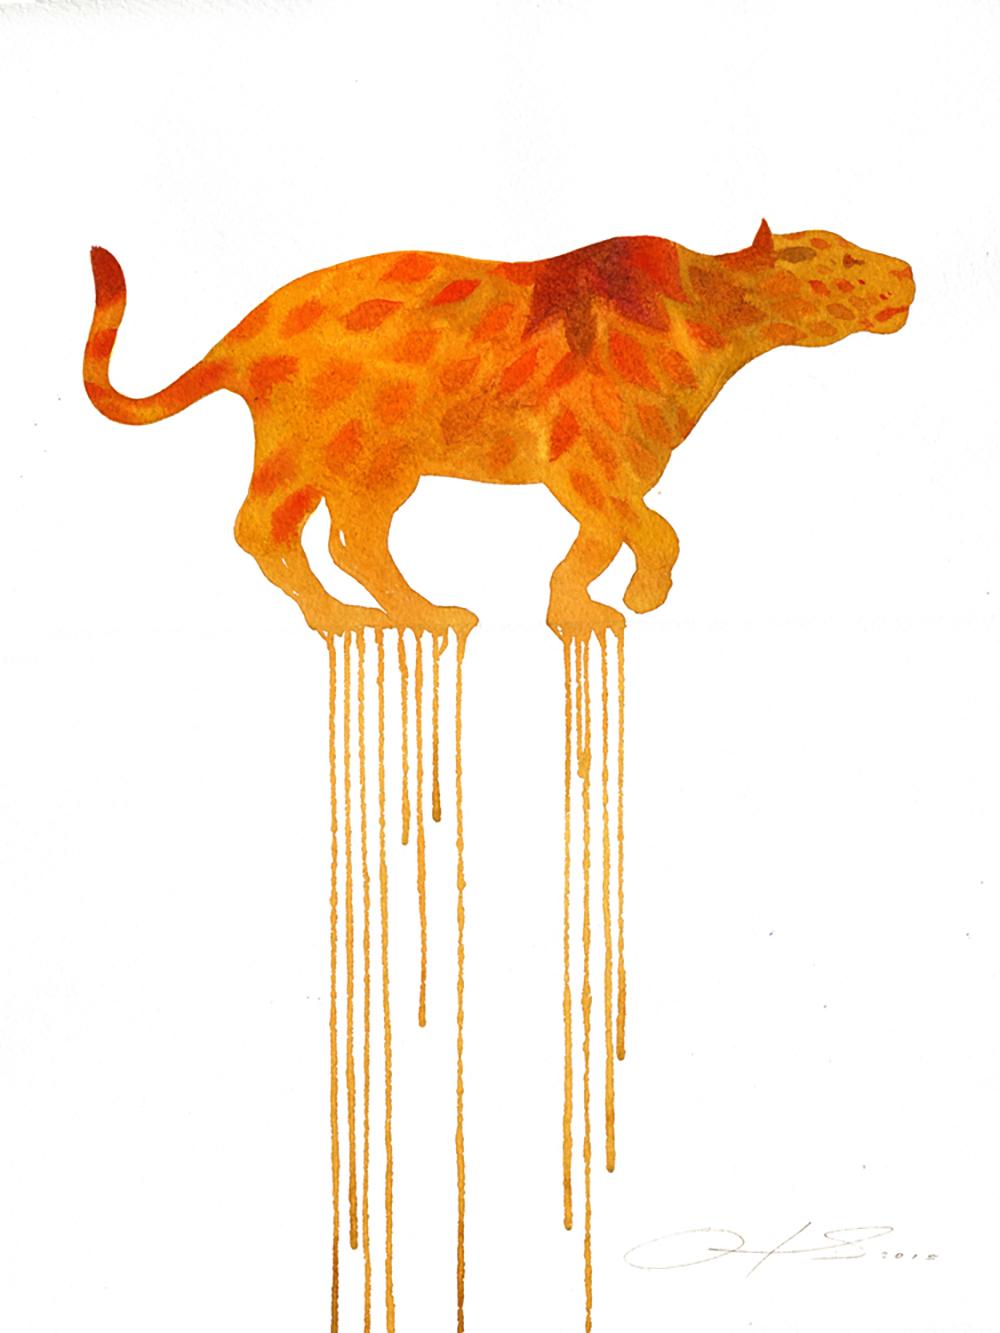 "Blooming Jaguar", watercolor & pencil illustration on watercolor paper